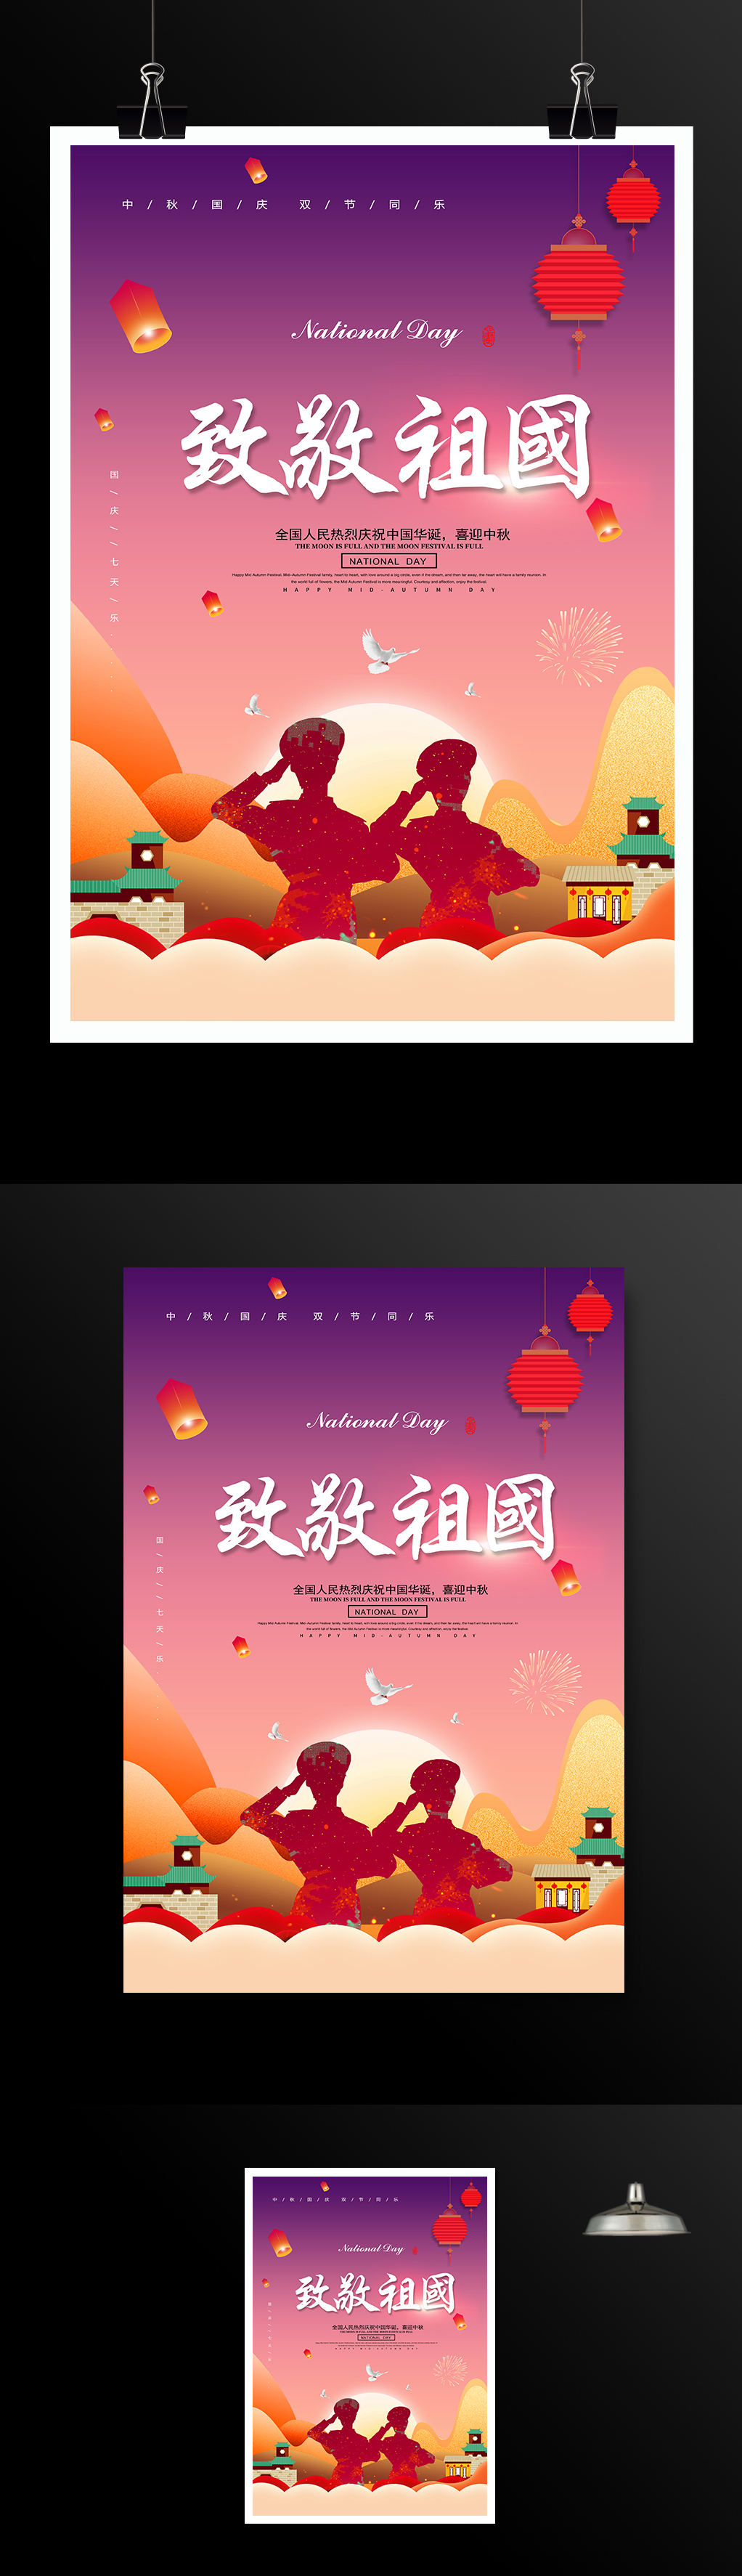 热烈庆祝中国华诞72周年国庆节海报